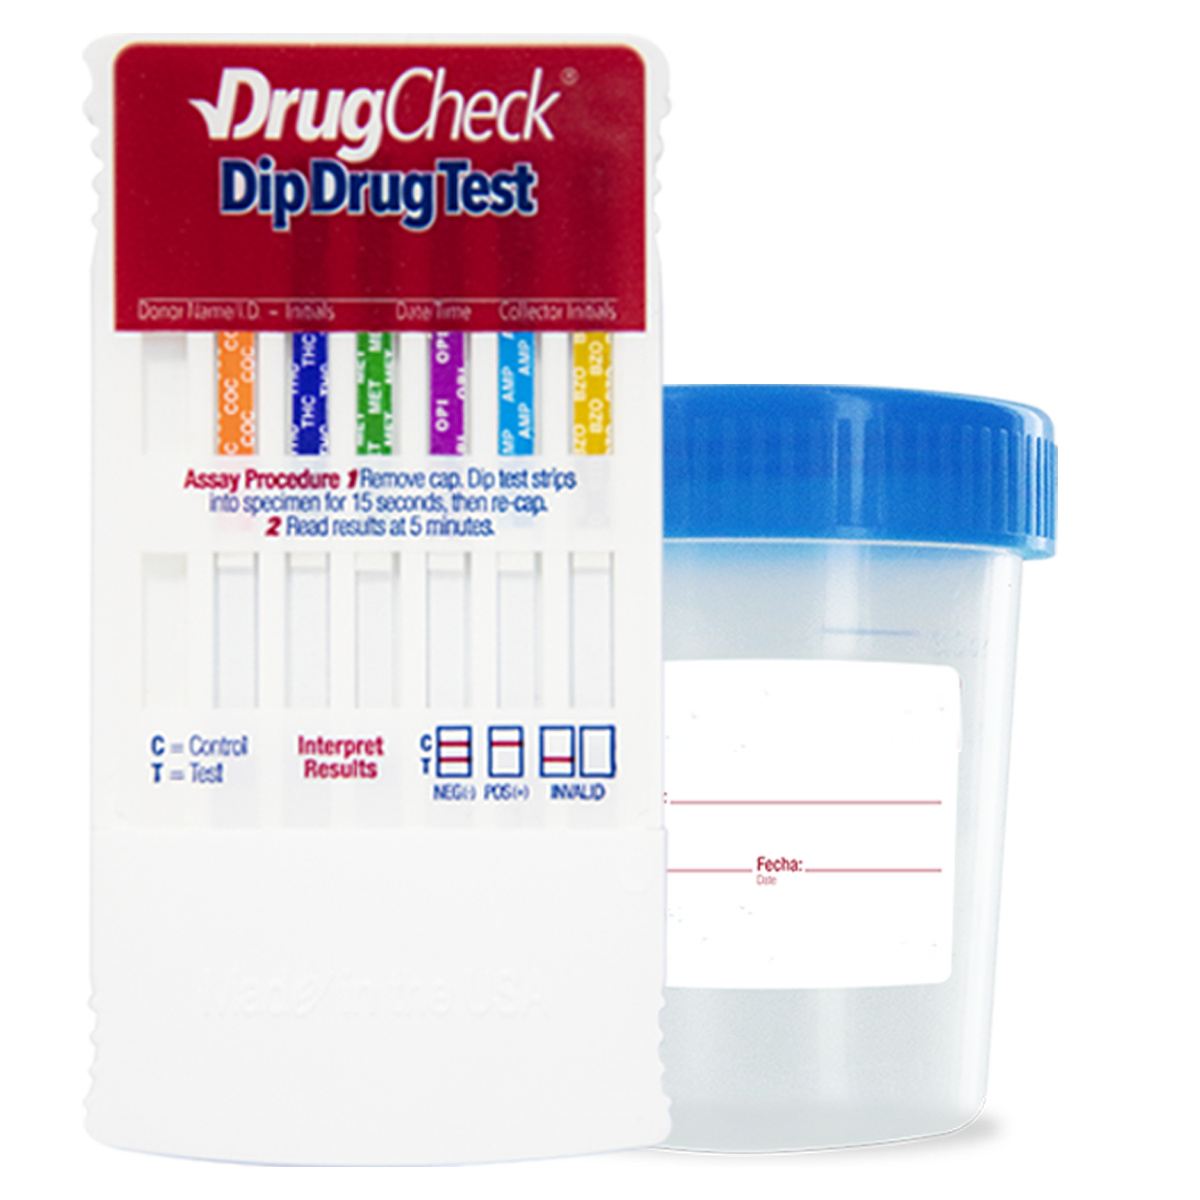 Tarjeta Antidoping Drugcheck